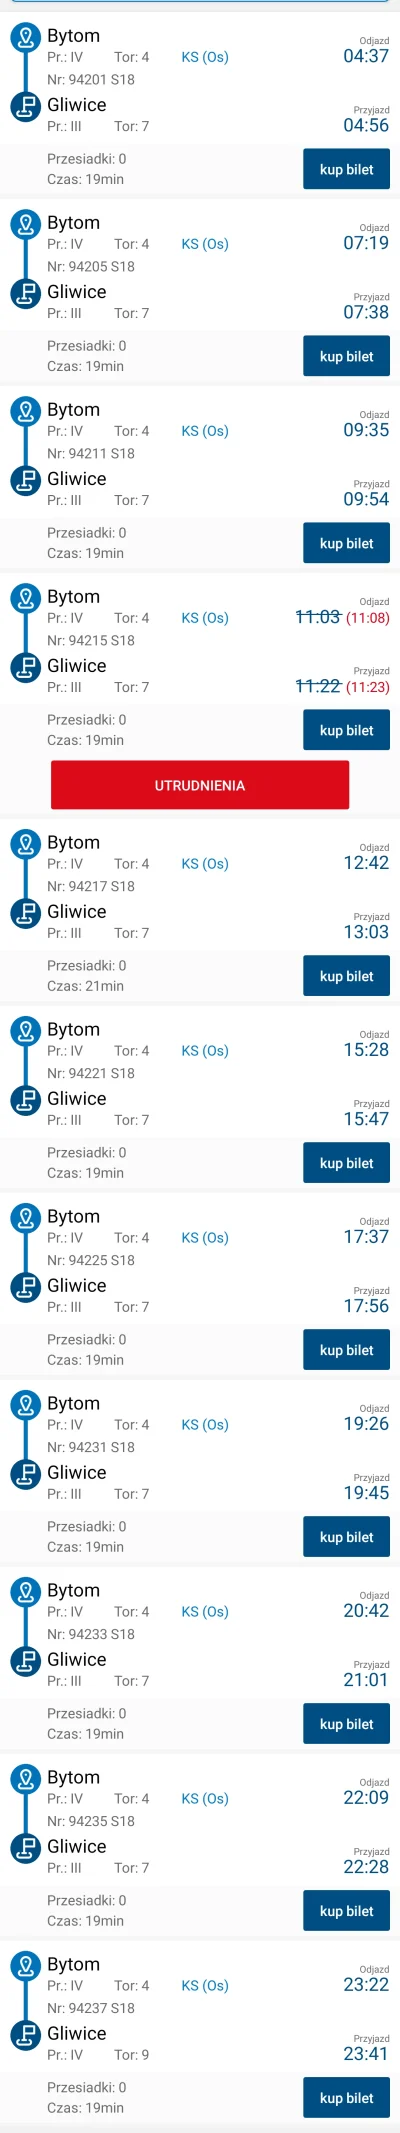 sylwke3100 - Przypominam że dziś ponownie ruszyło kolejowe połączenie lokalne Bytom -...